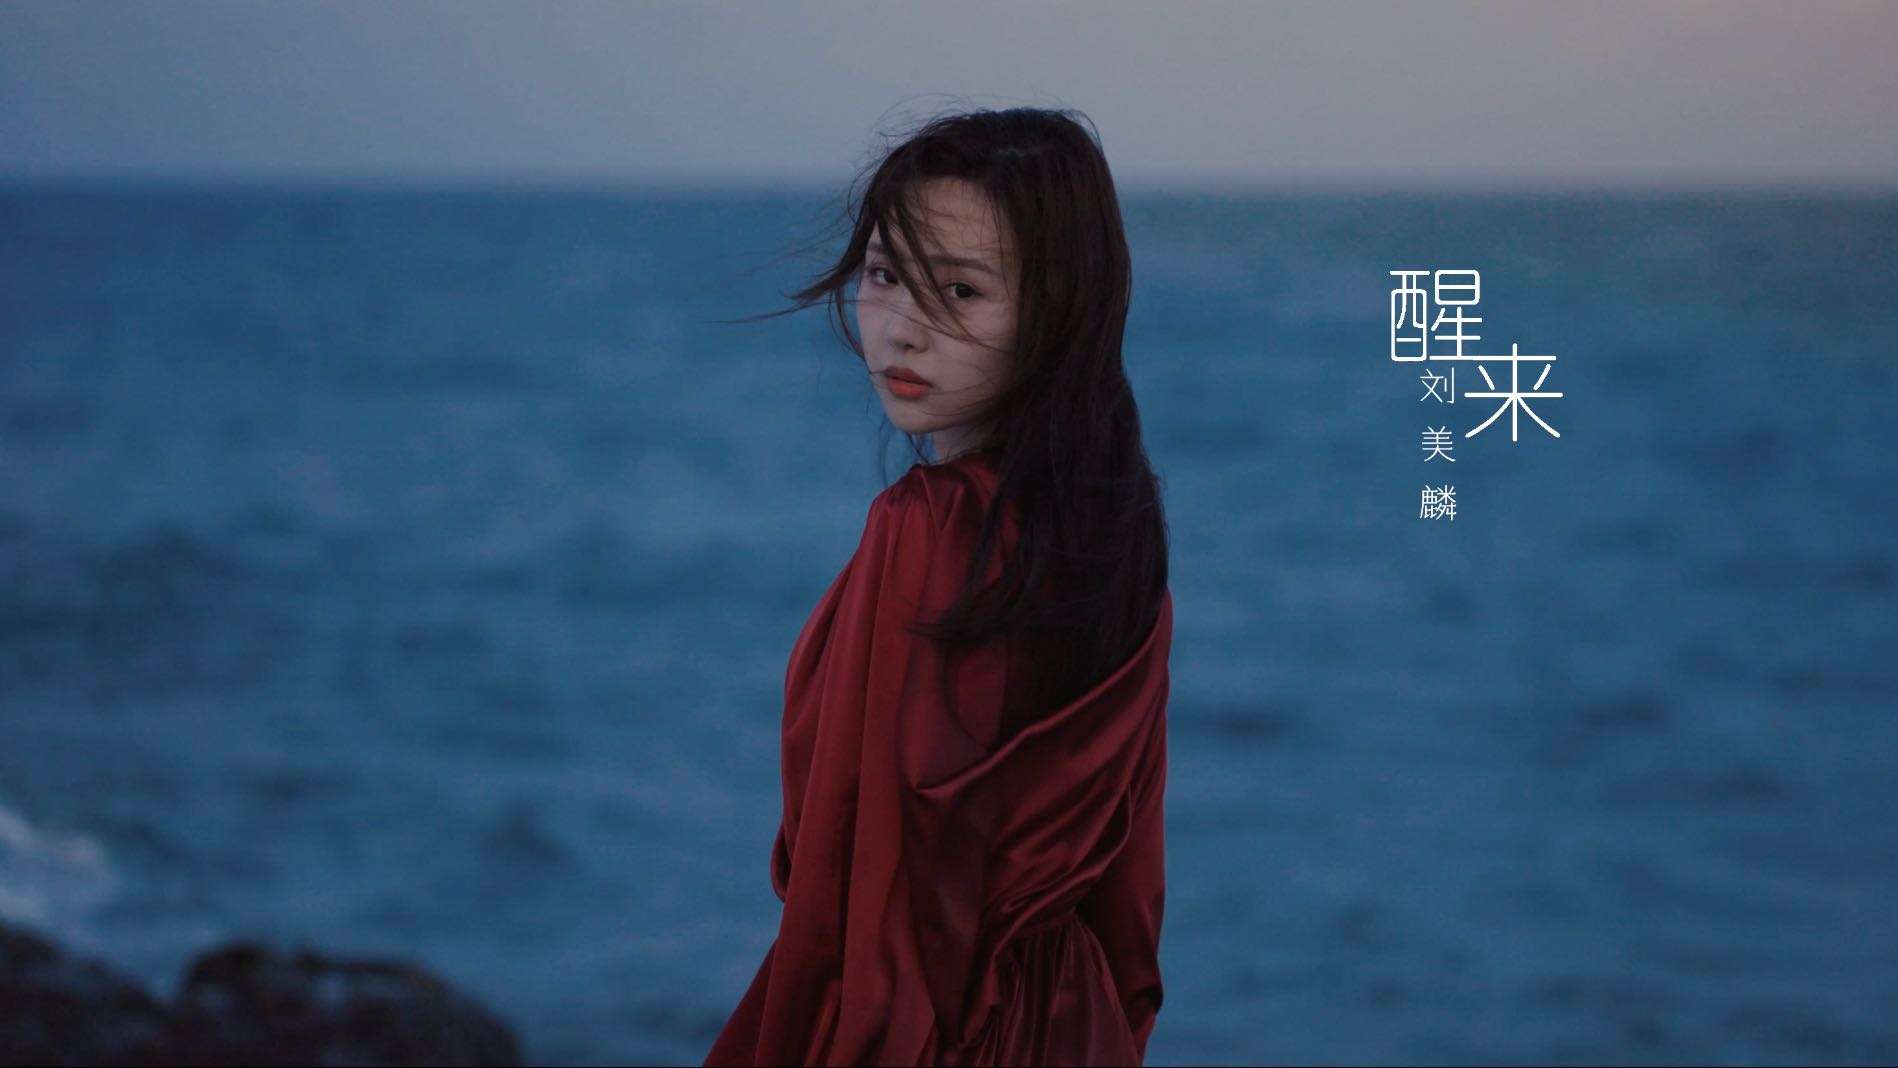 刘美麟个人单曲MV  「醒来」